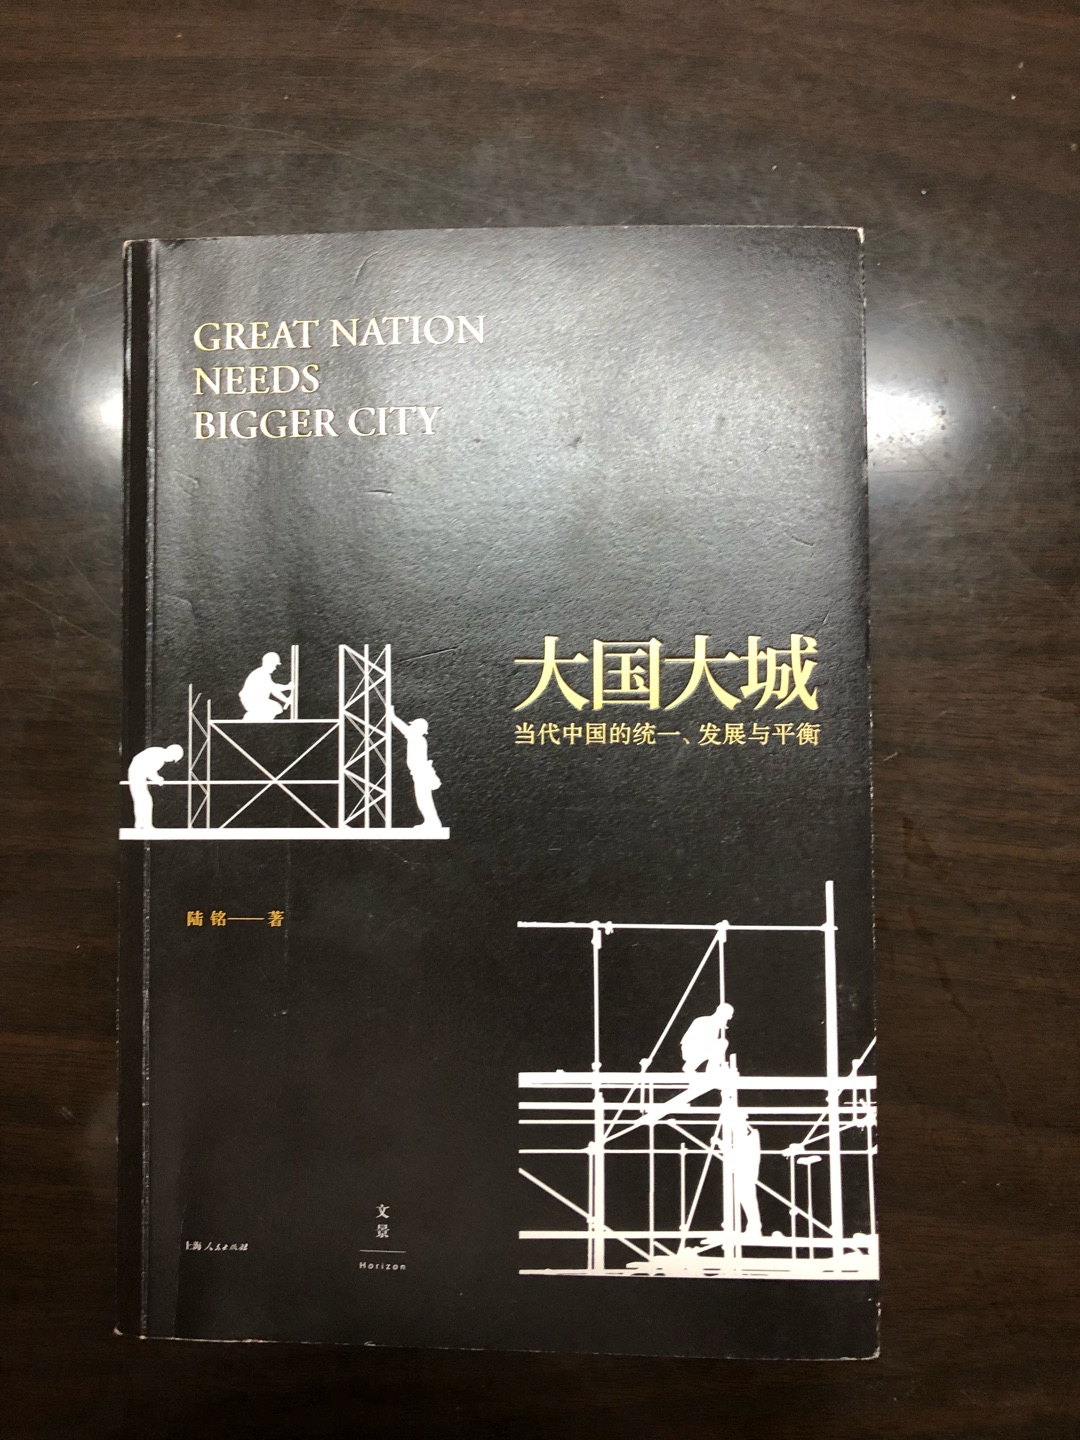 这本书是中国目前比较少见的关于城市化发展的论述专著，坚持发展以大城市为中心，体现规模经济与人口集聚效用，体现了经济发展规律，顺应市场潮流，很难得的一本说真话坚持自己观点的书。